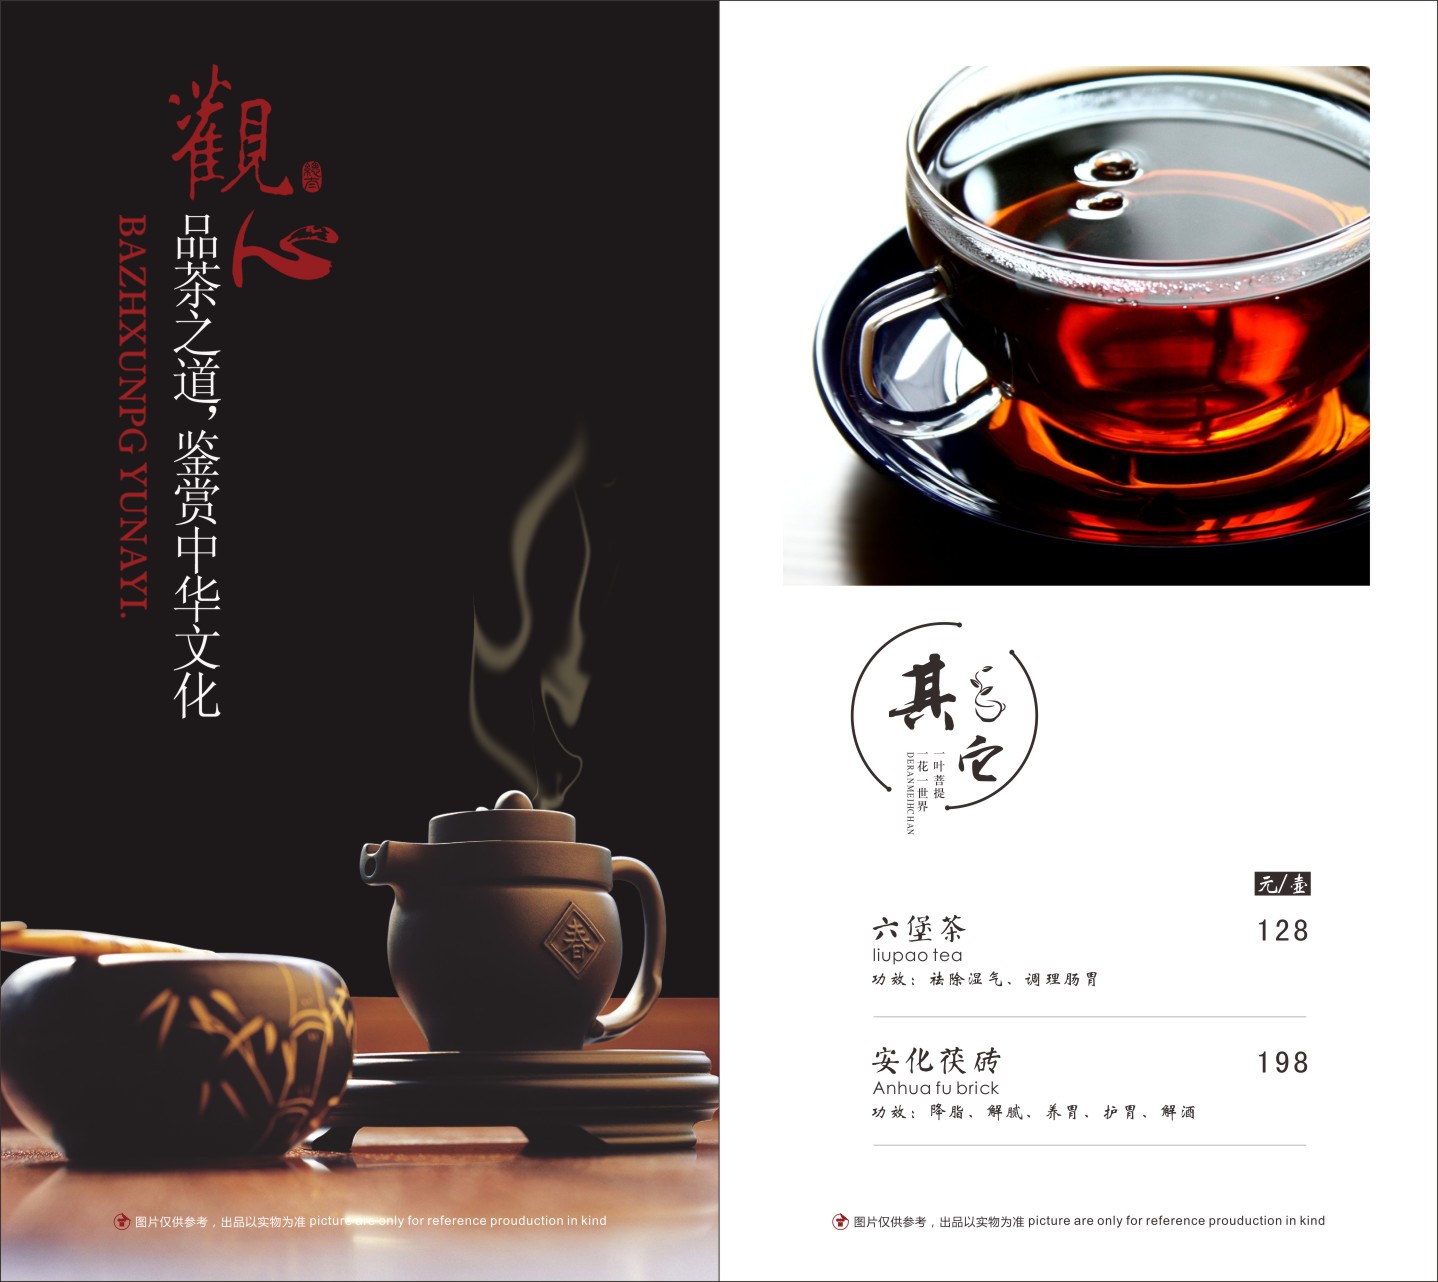 茶楼茶水单模板图片